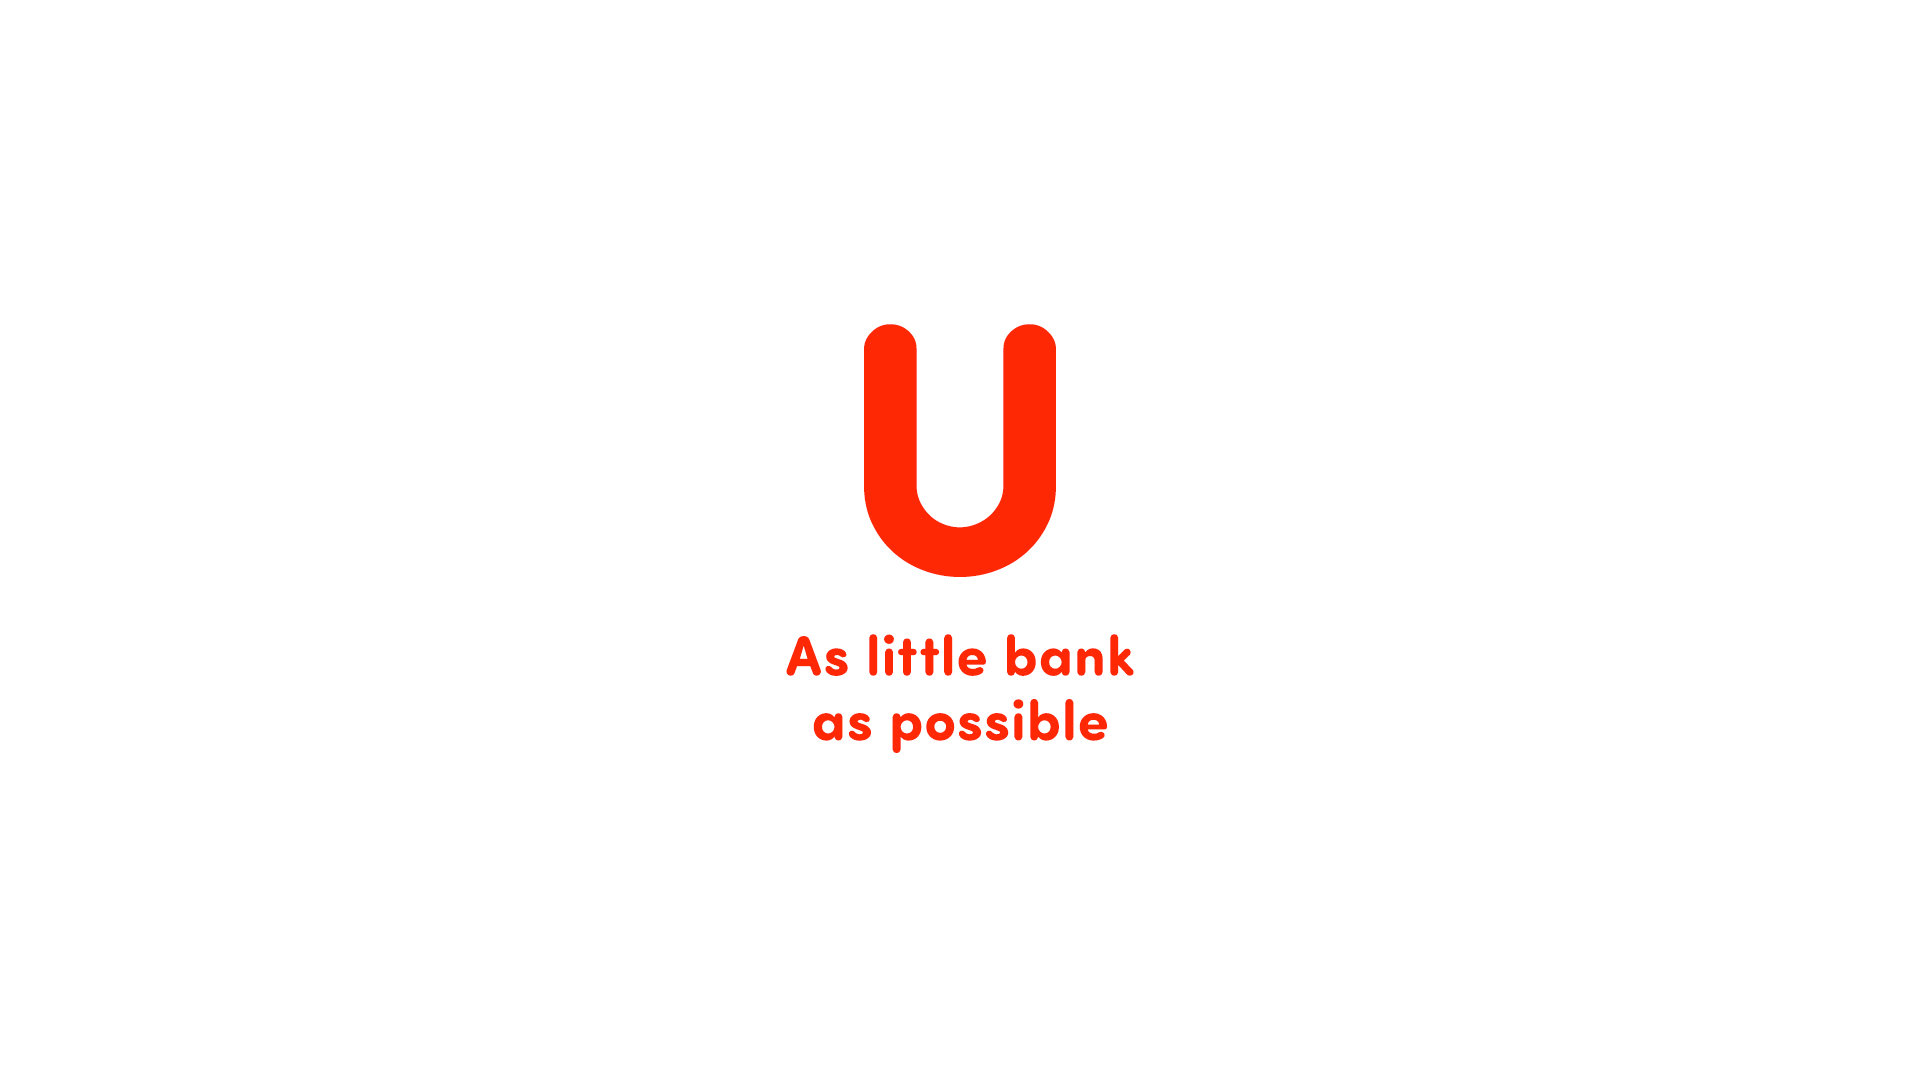 logo_u_bank